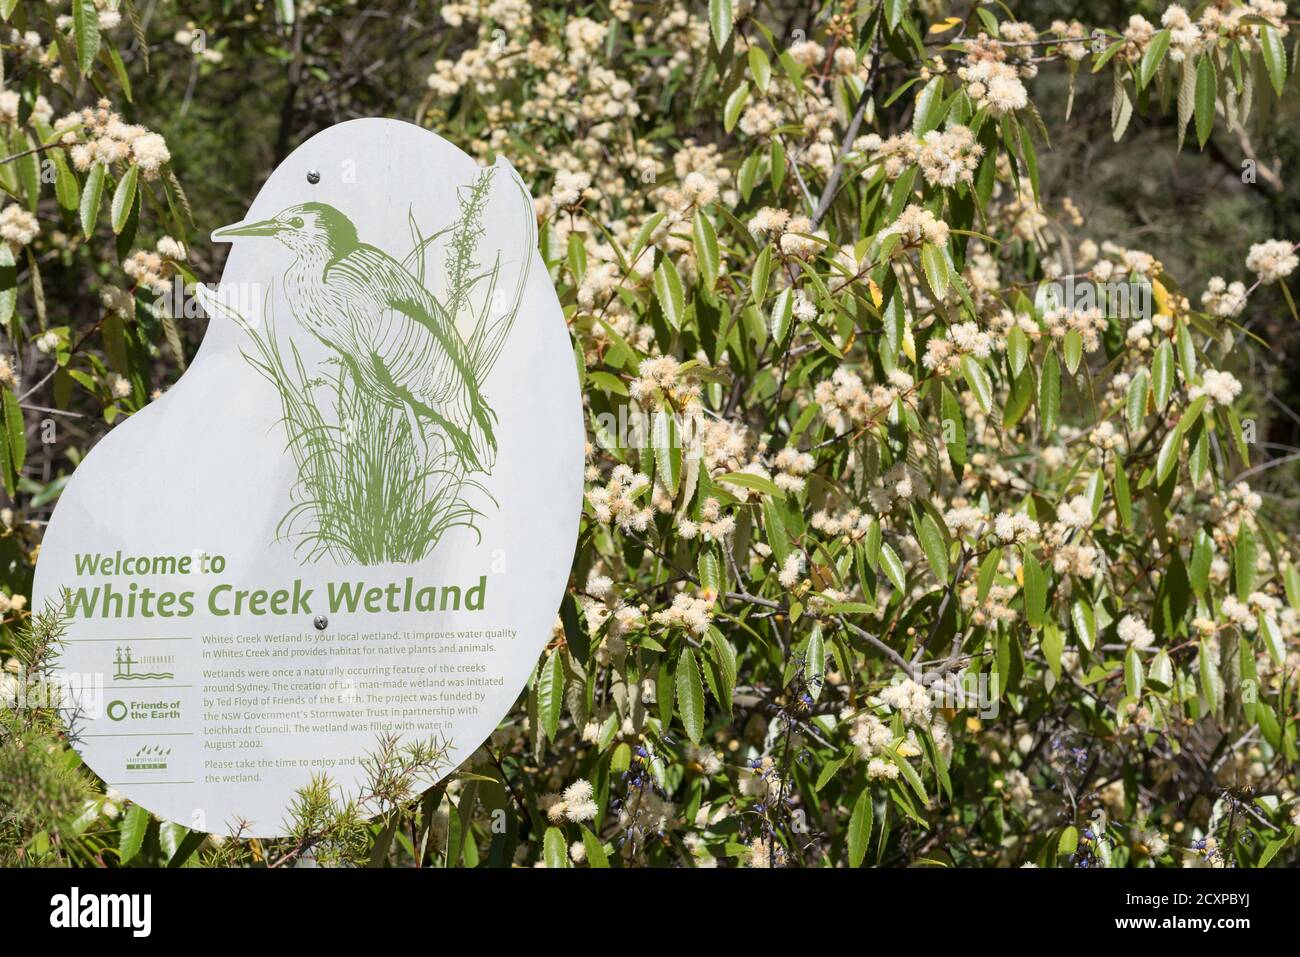 White's Creek Wetland devia il deflusso delle acque piovane in una pianta nativa stagni che catturano l'azoto in eccesso e forniscono un habitat per fauna locale Foto Stock